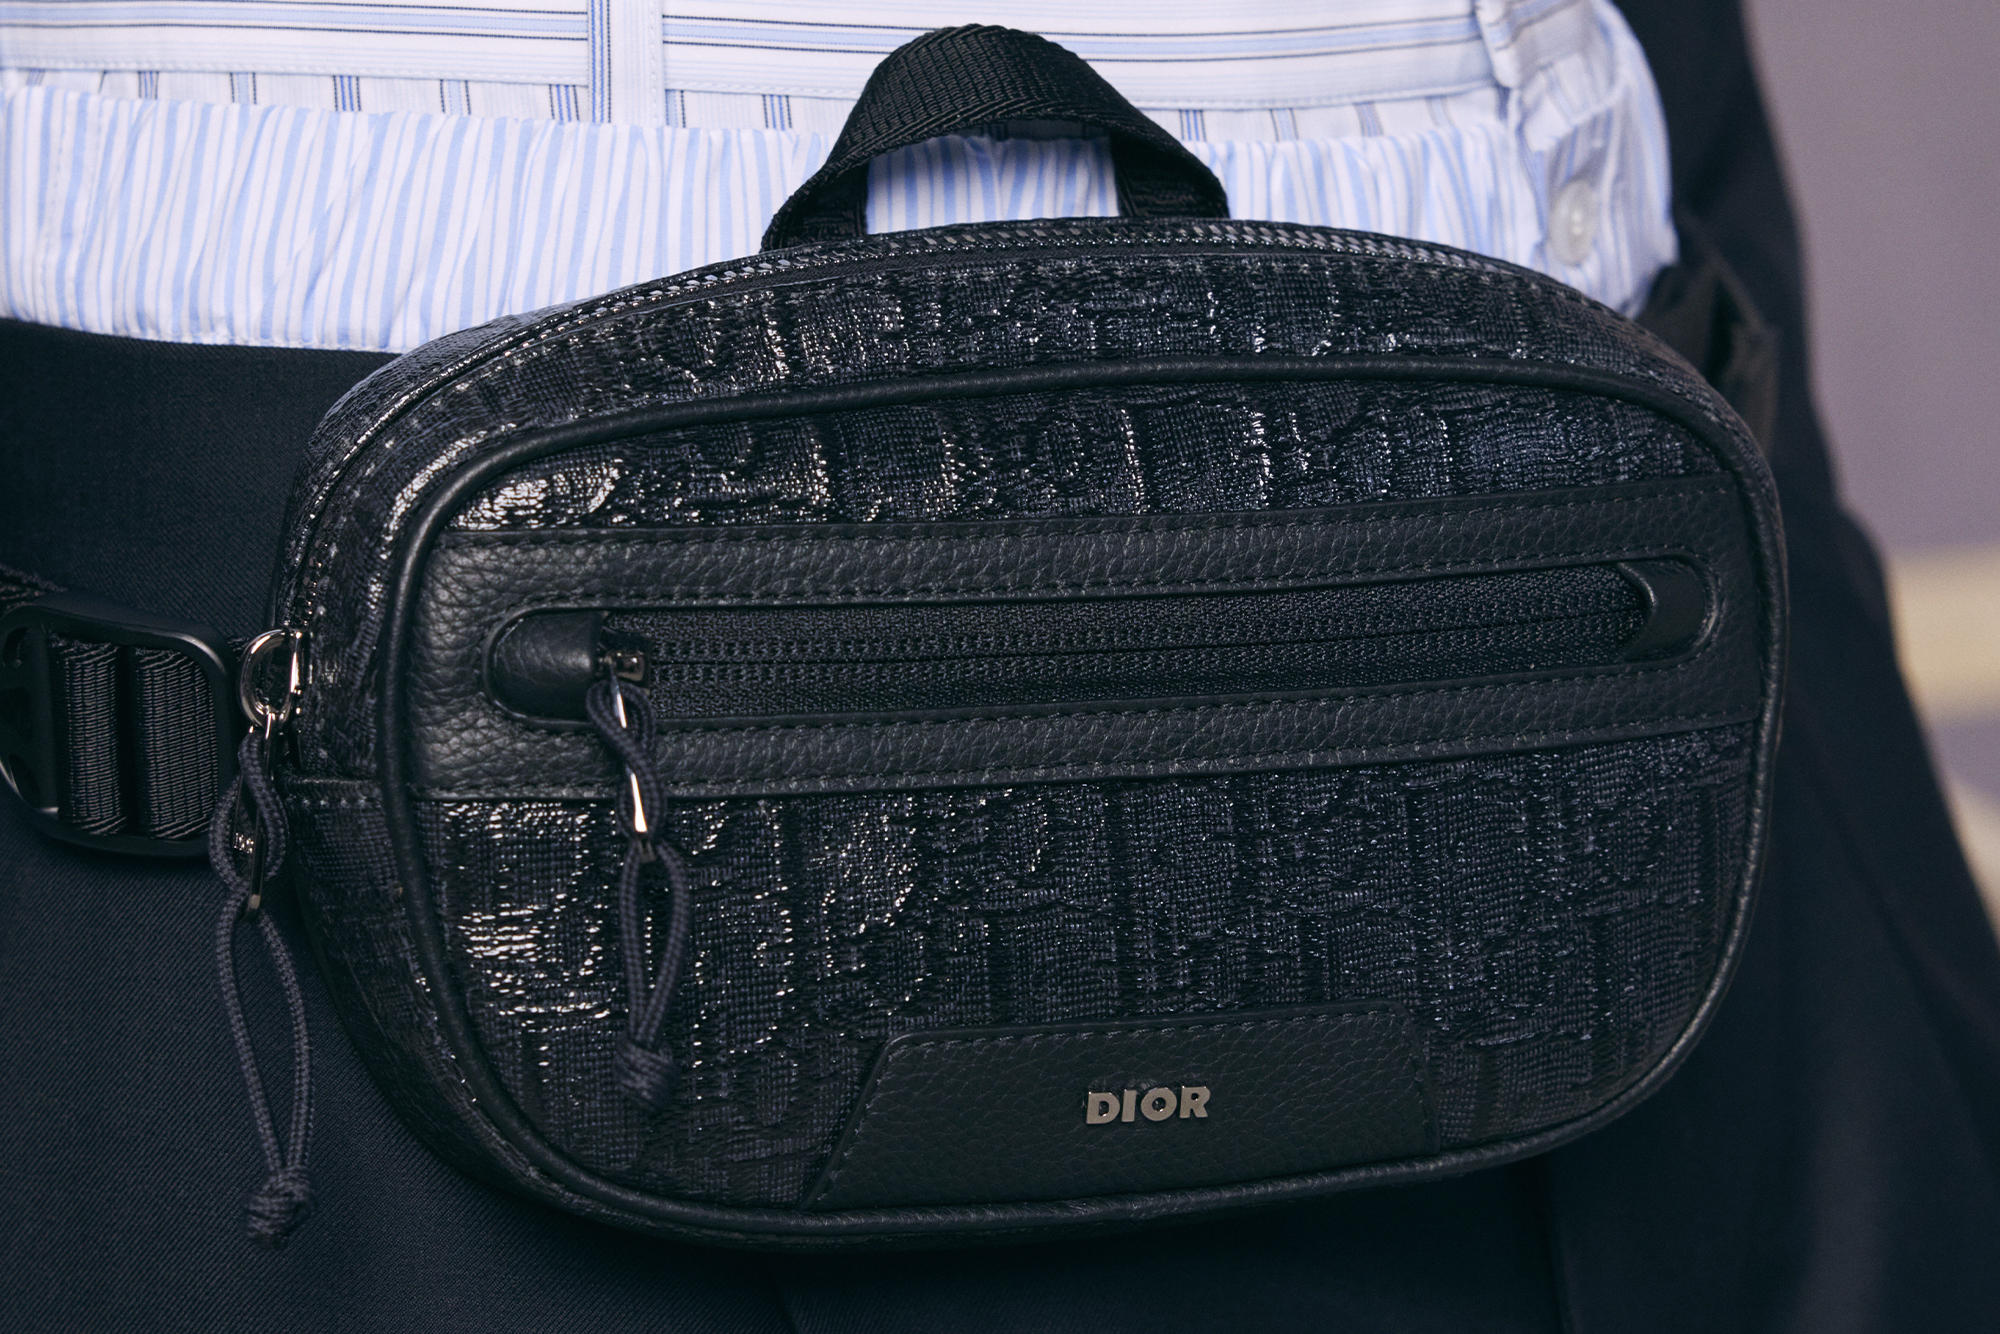 Dior black strap bag